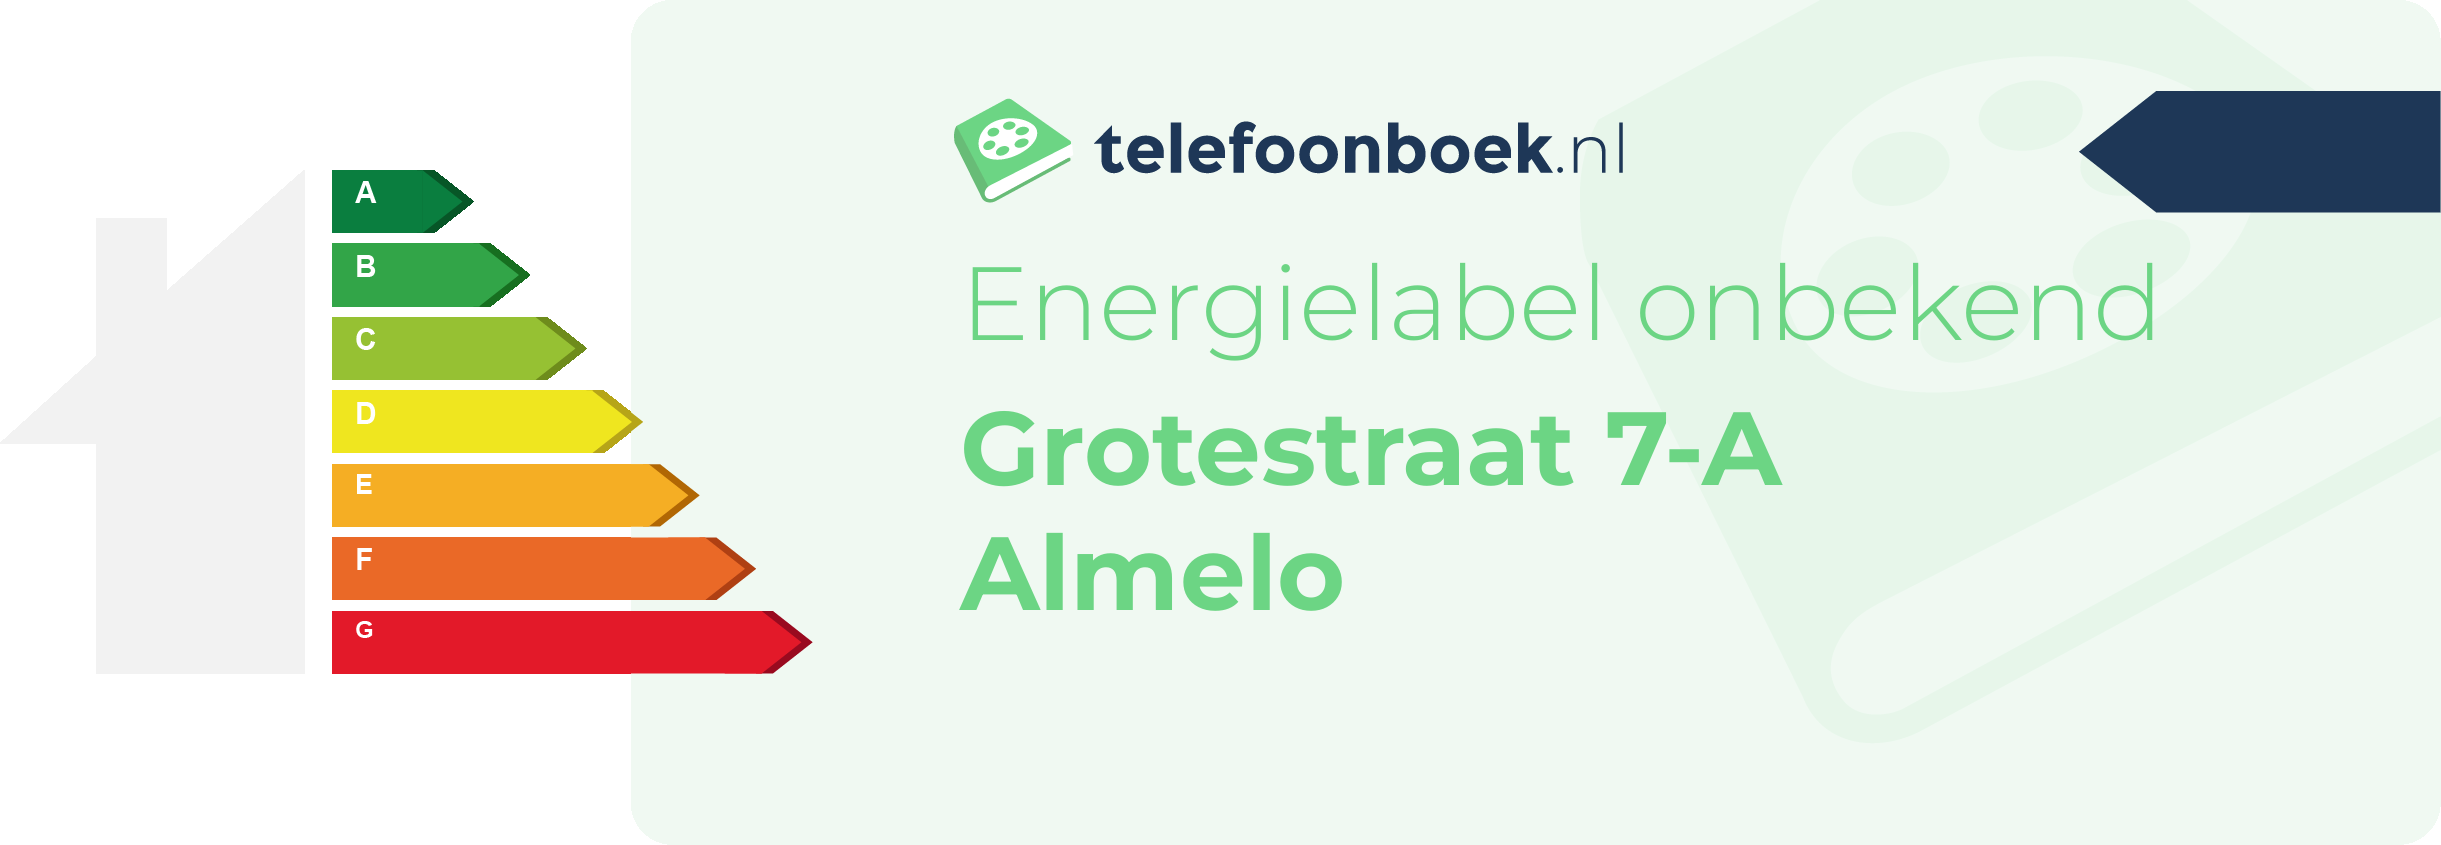 Energielabel Grotestraat 7-A Almelo